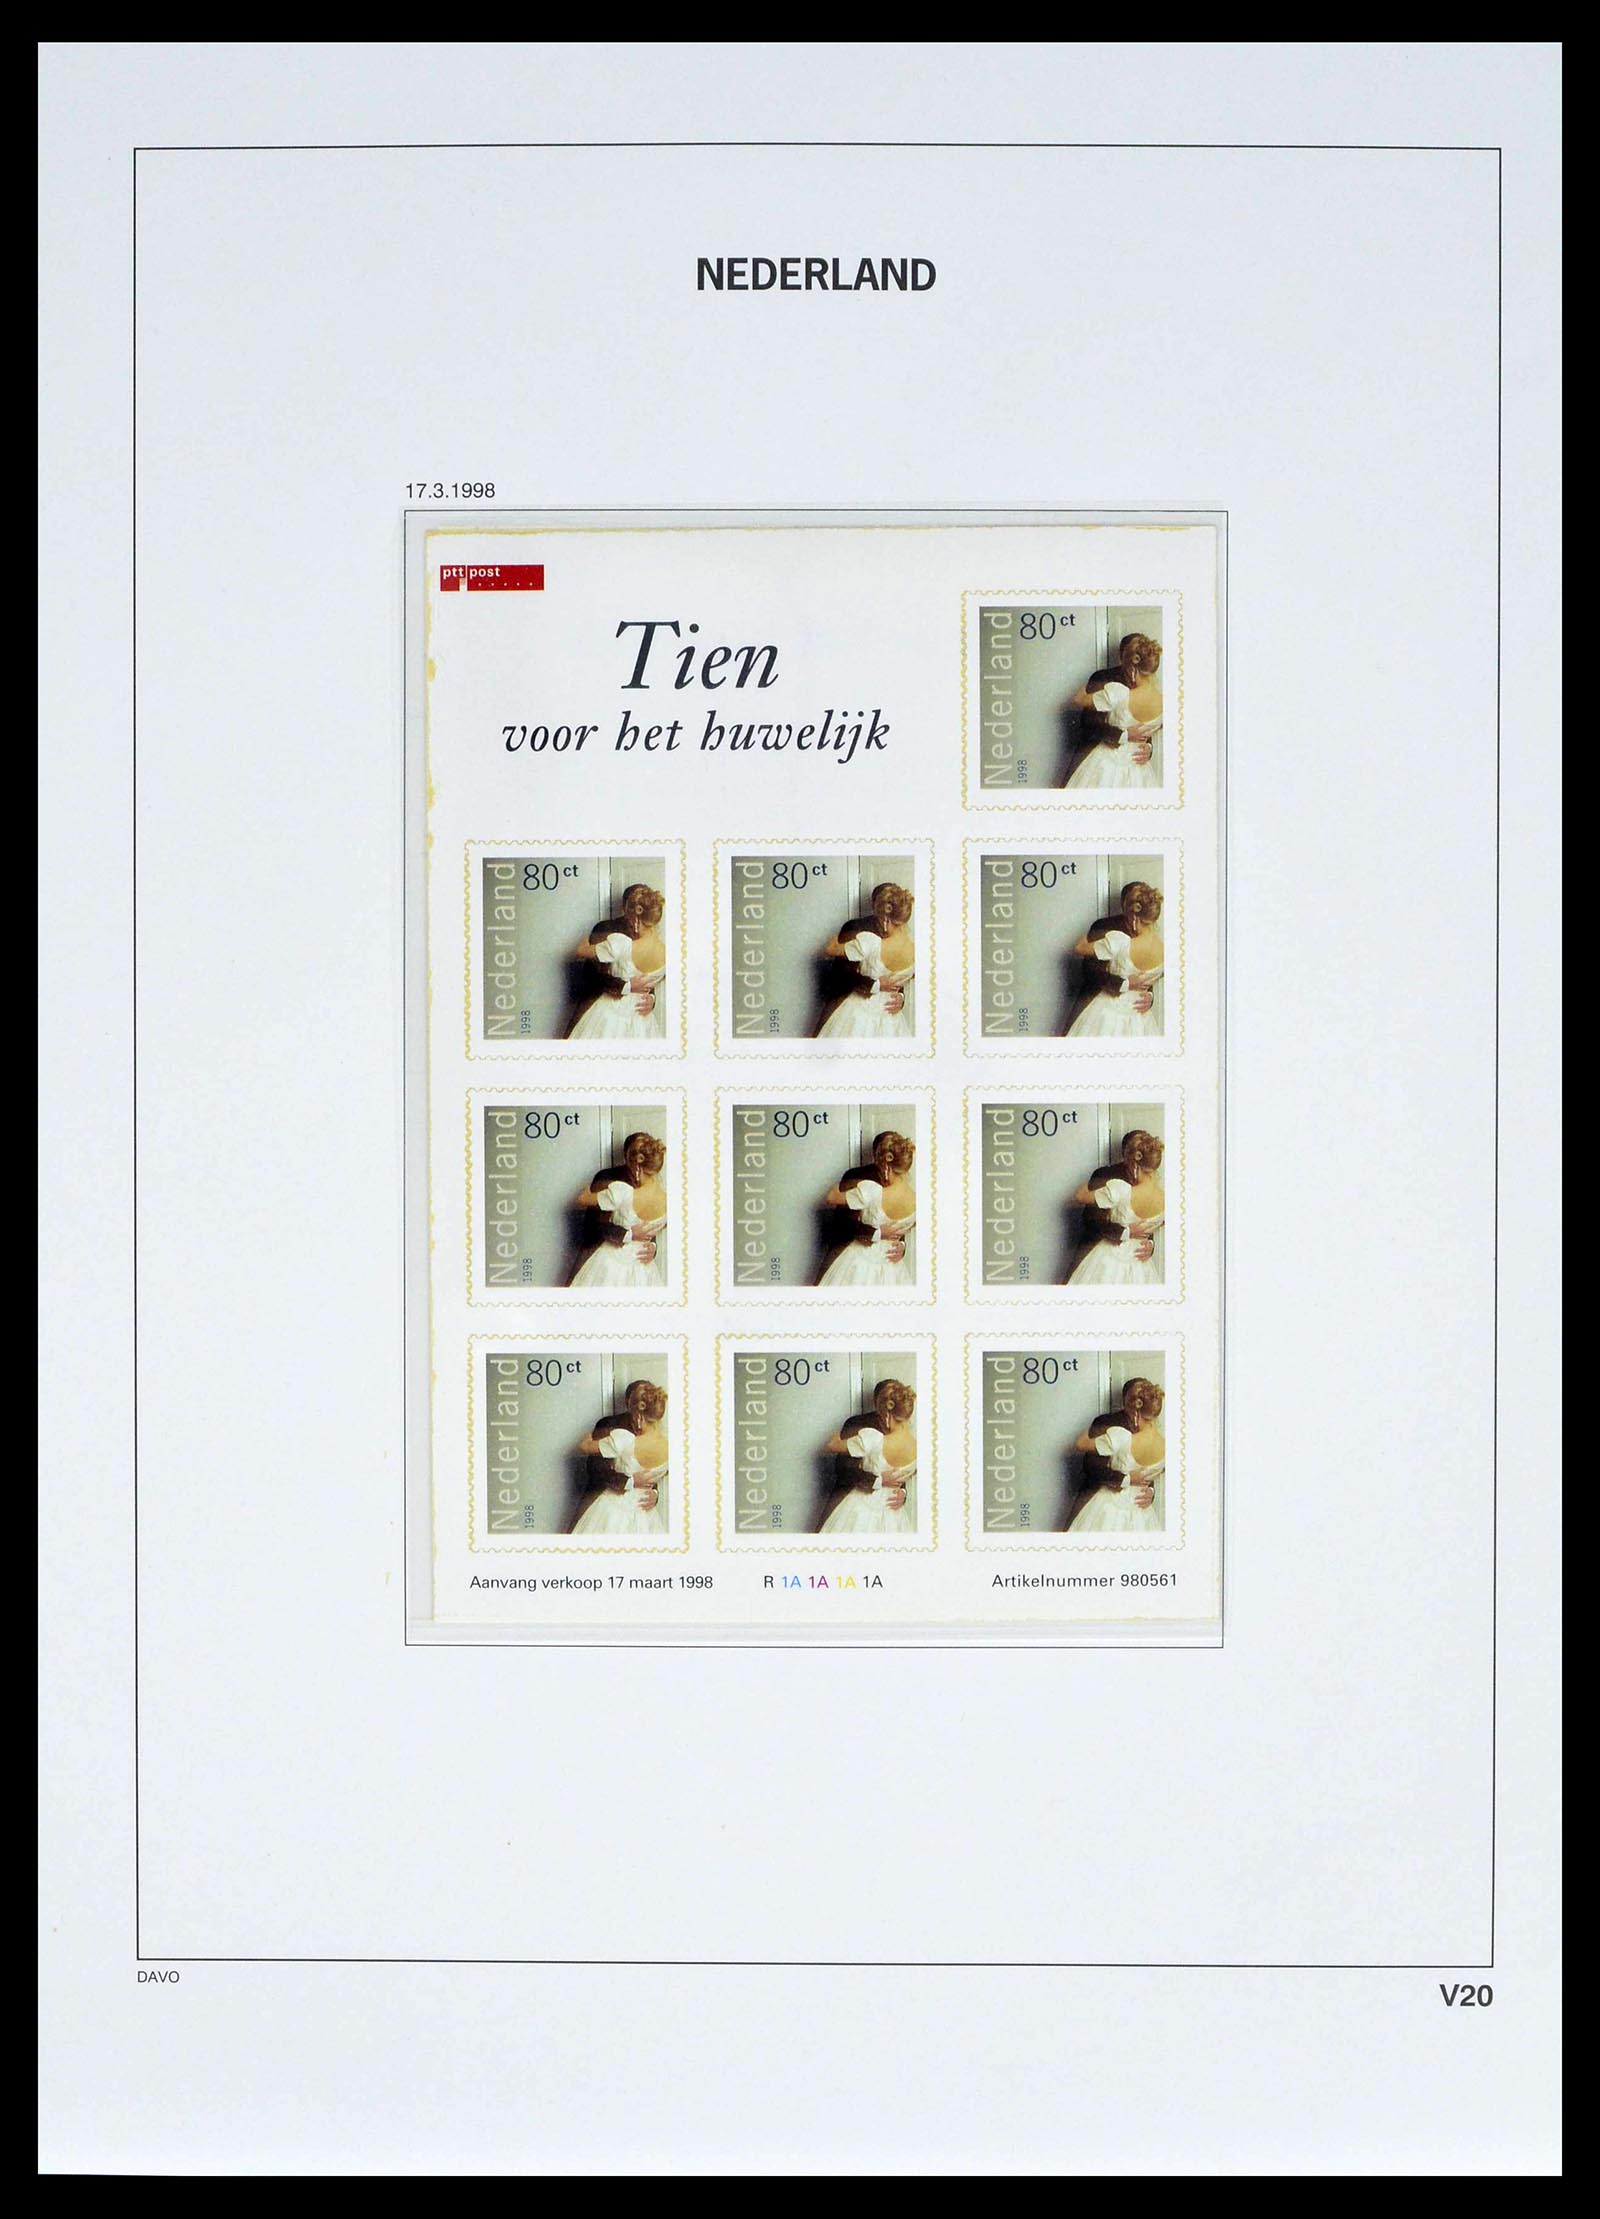 39134 0029 - Stamp collection 39134 Netherlands sheetlets 1992-2019!